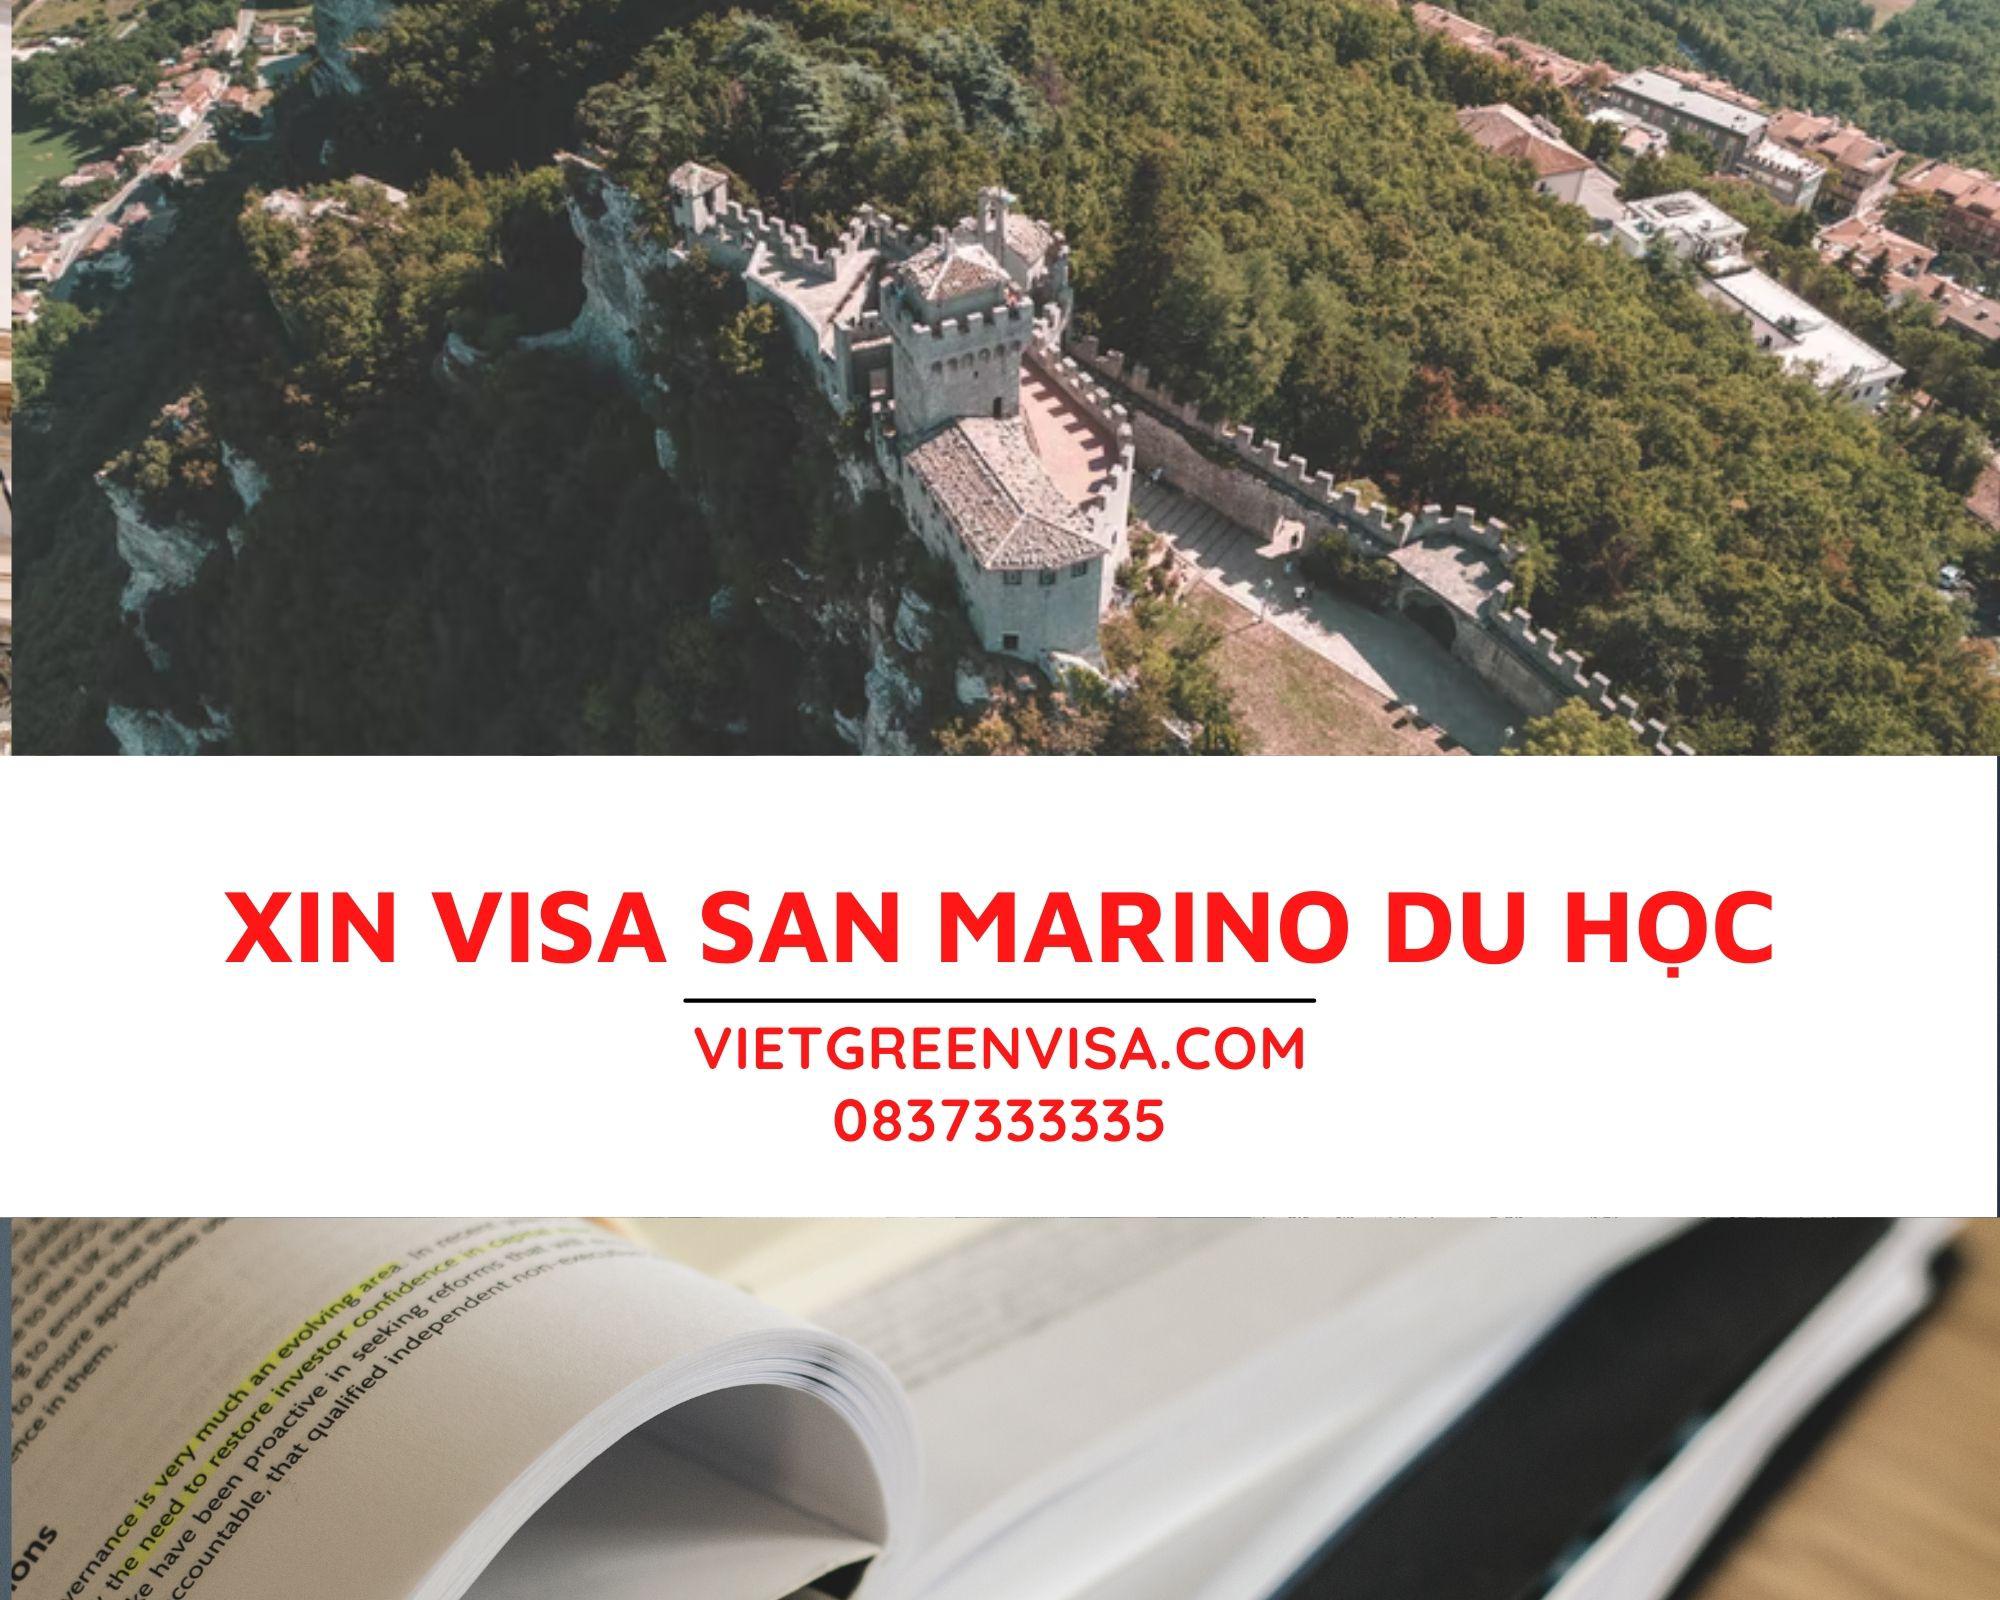 Dịch vụ hỗ trợ visa du học San Marino trọn gói